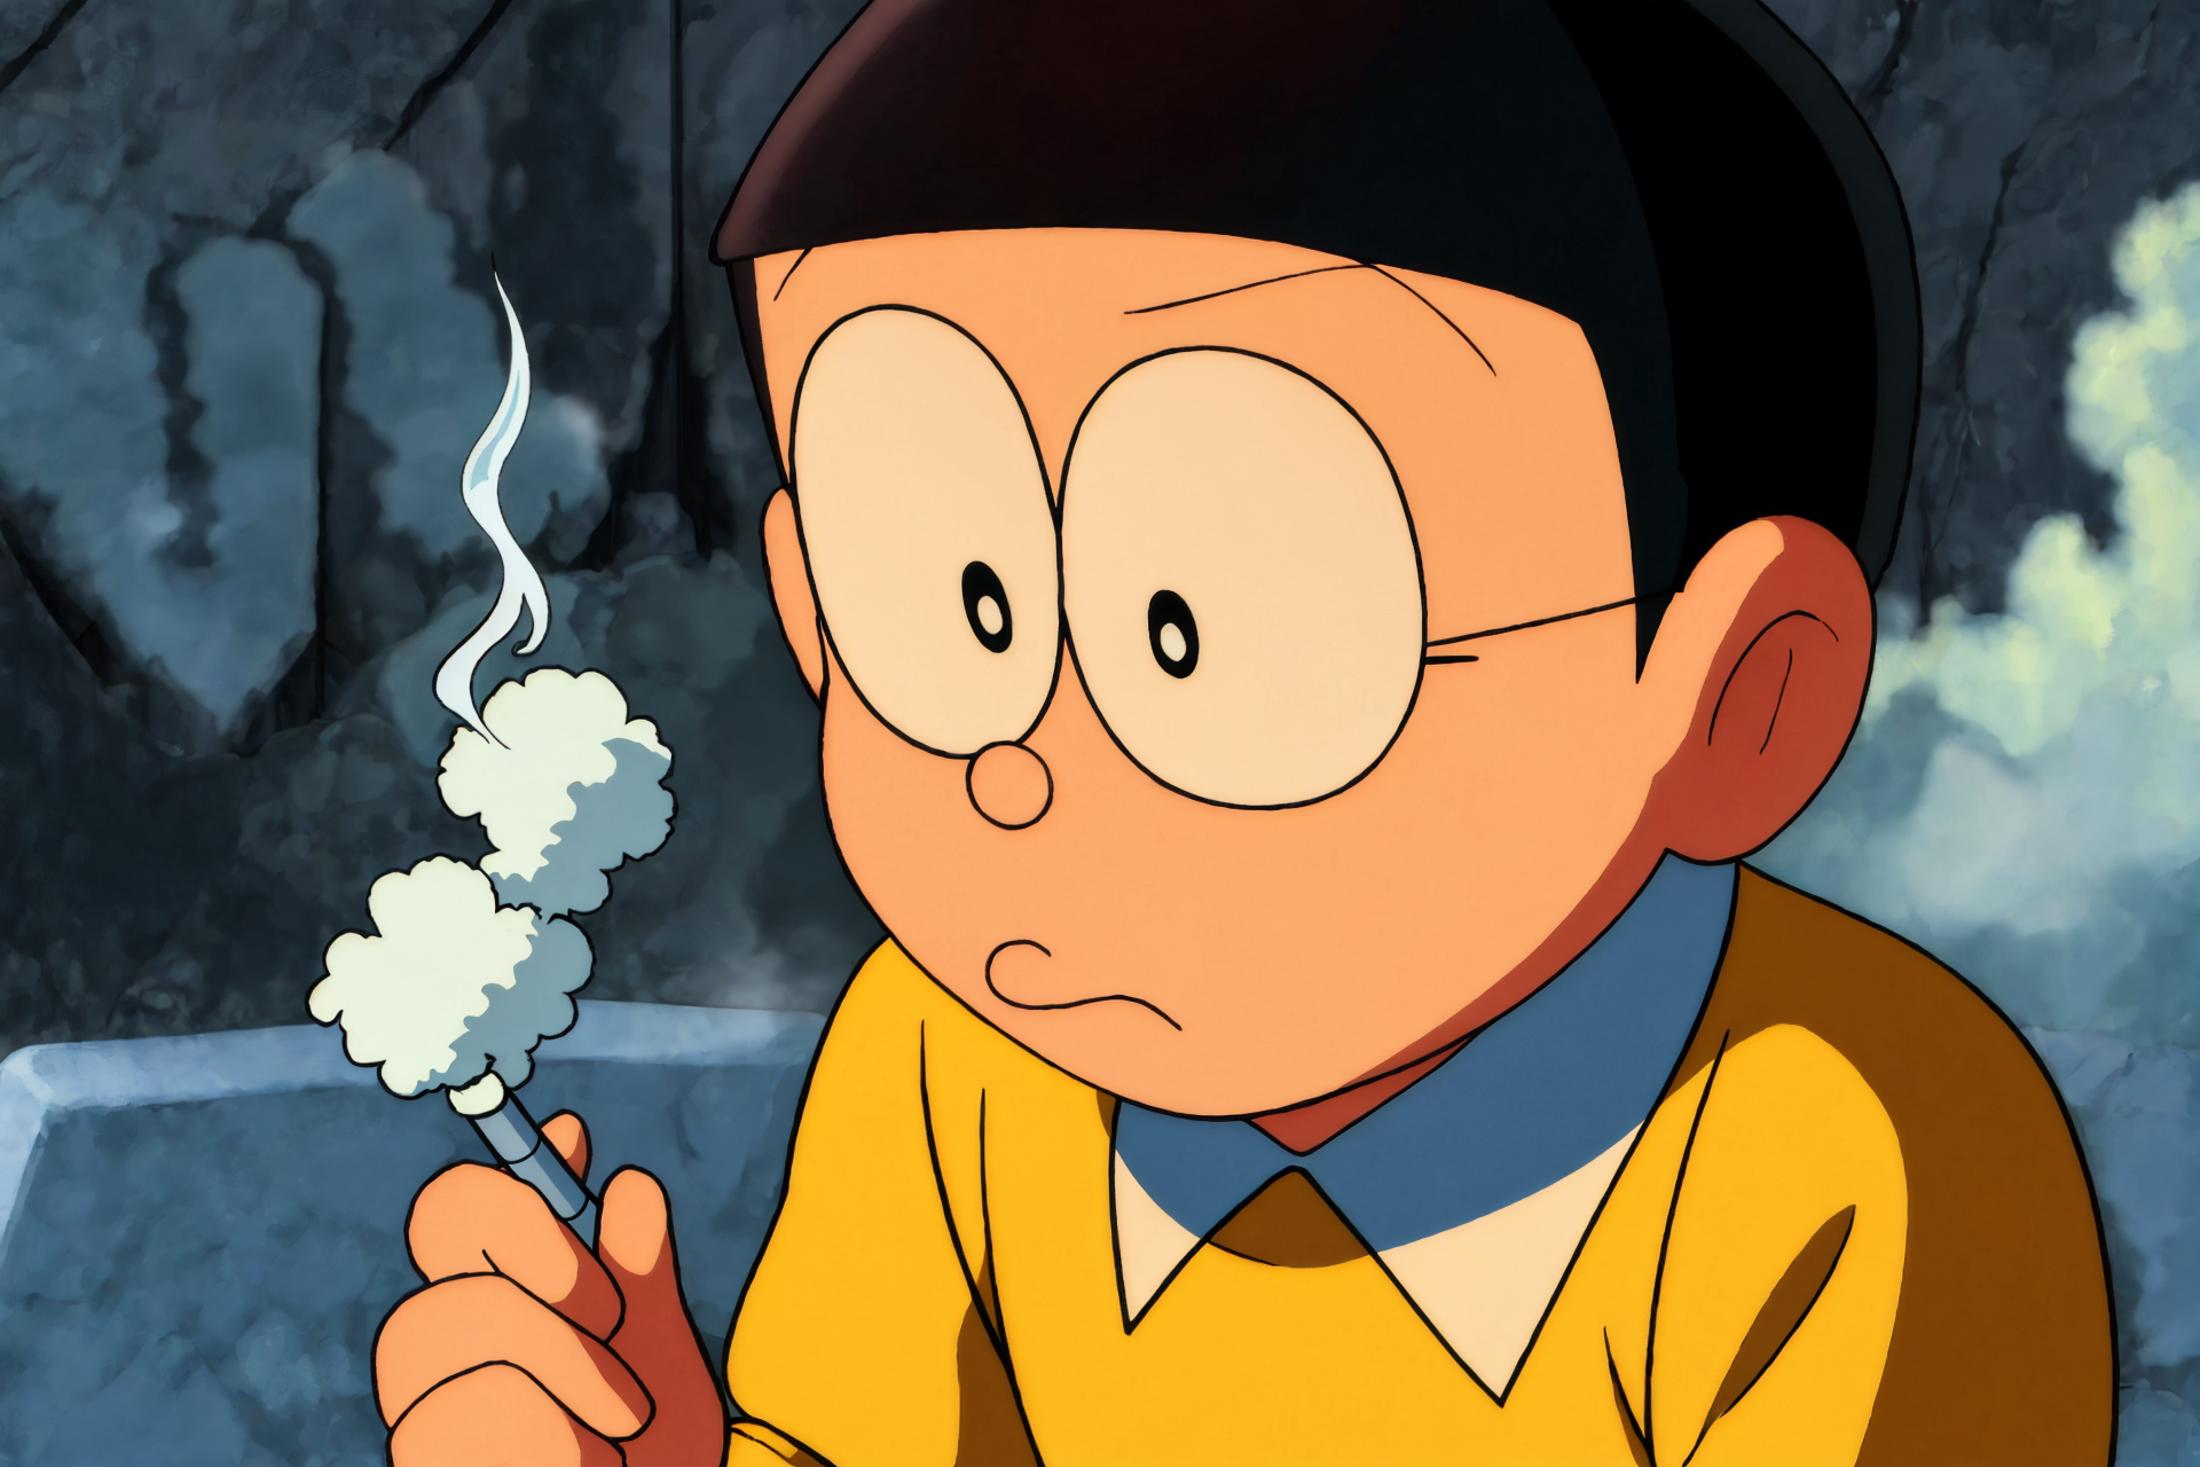 哆啦A梦-野比大雄Nobita daxiongv1 image by Narcissists